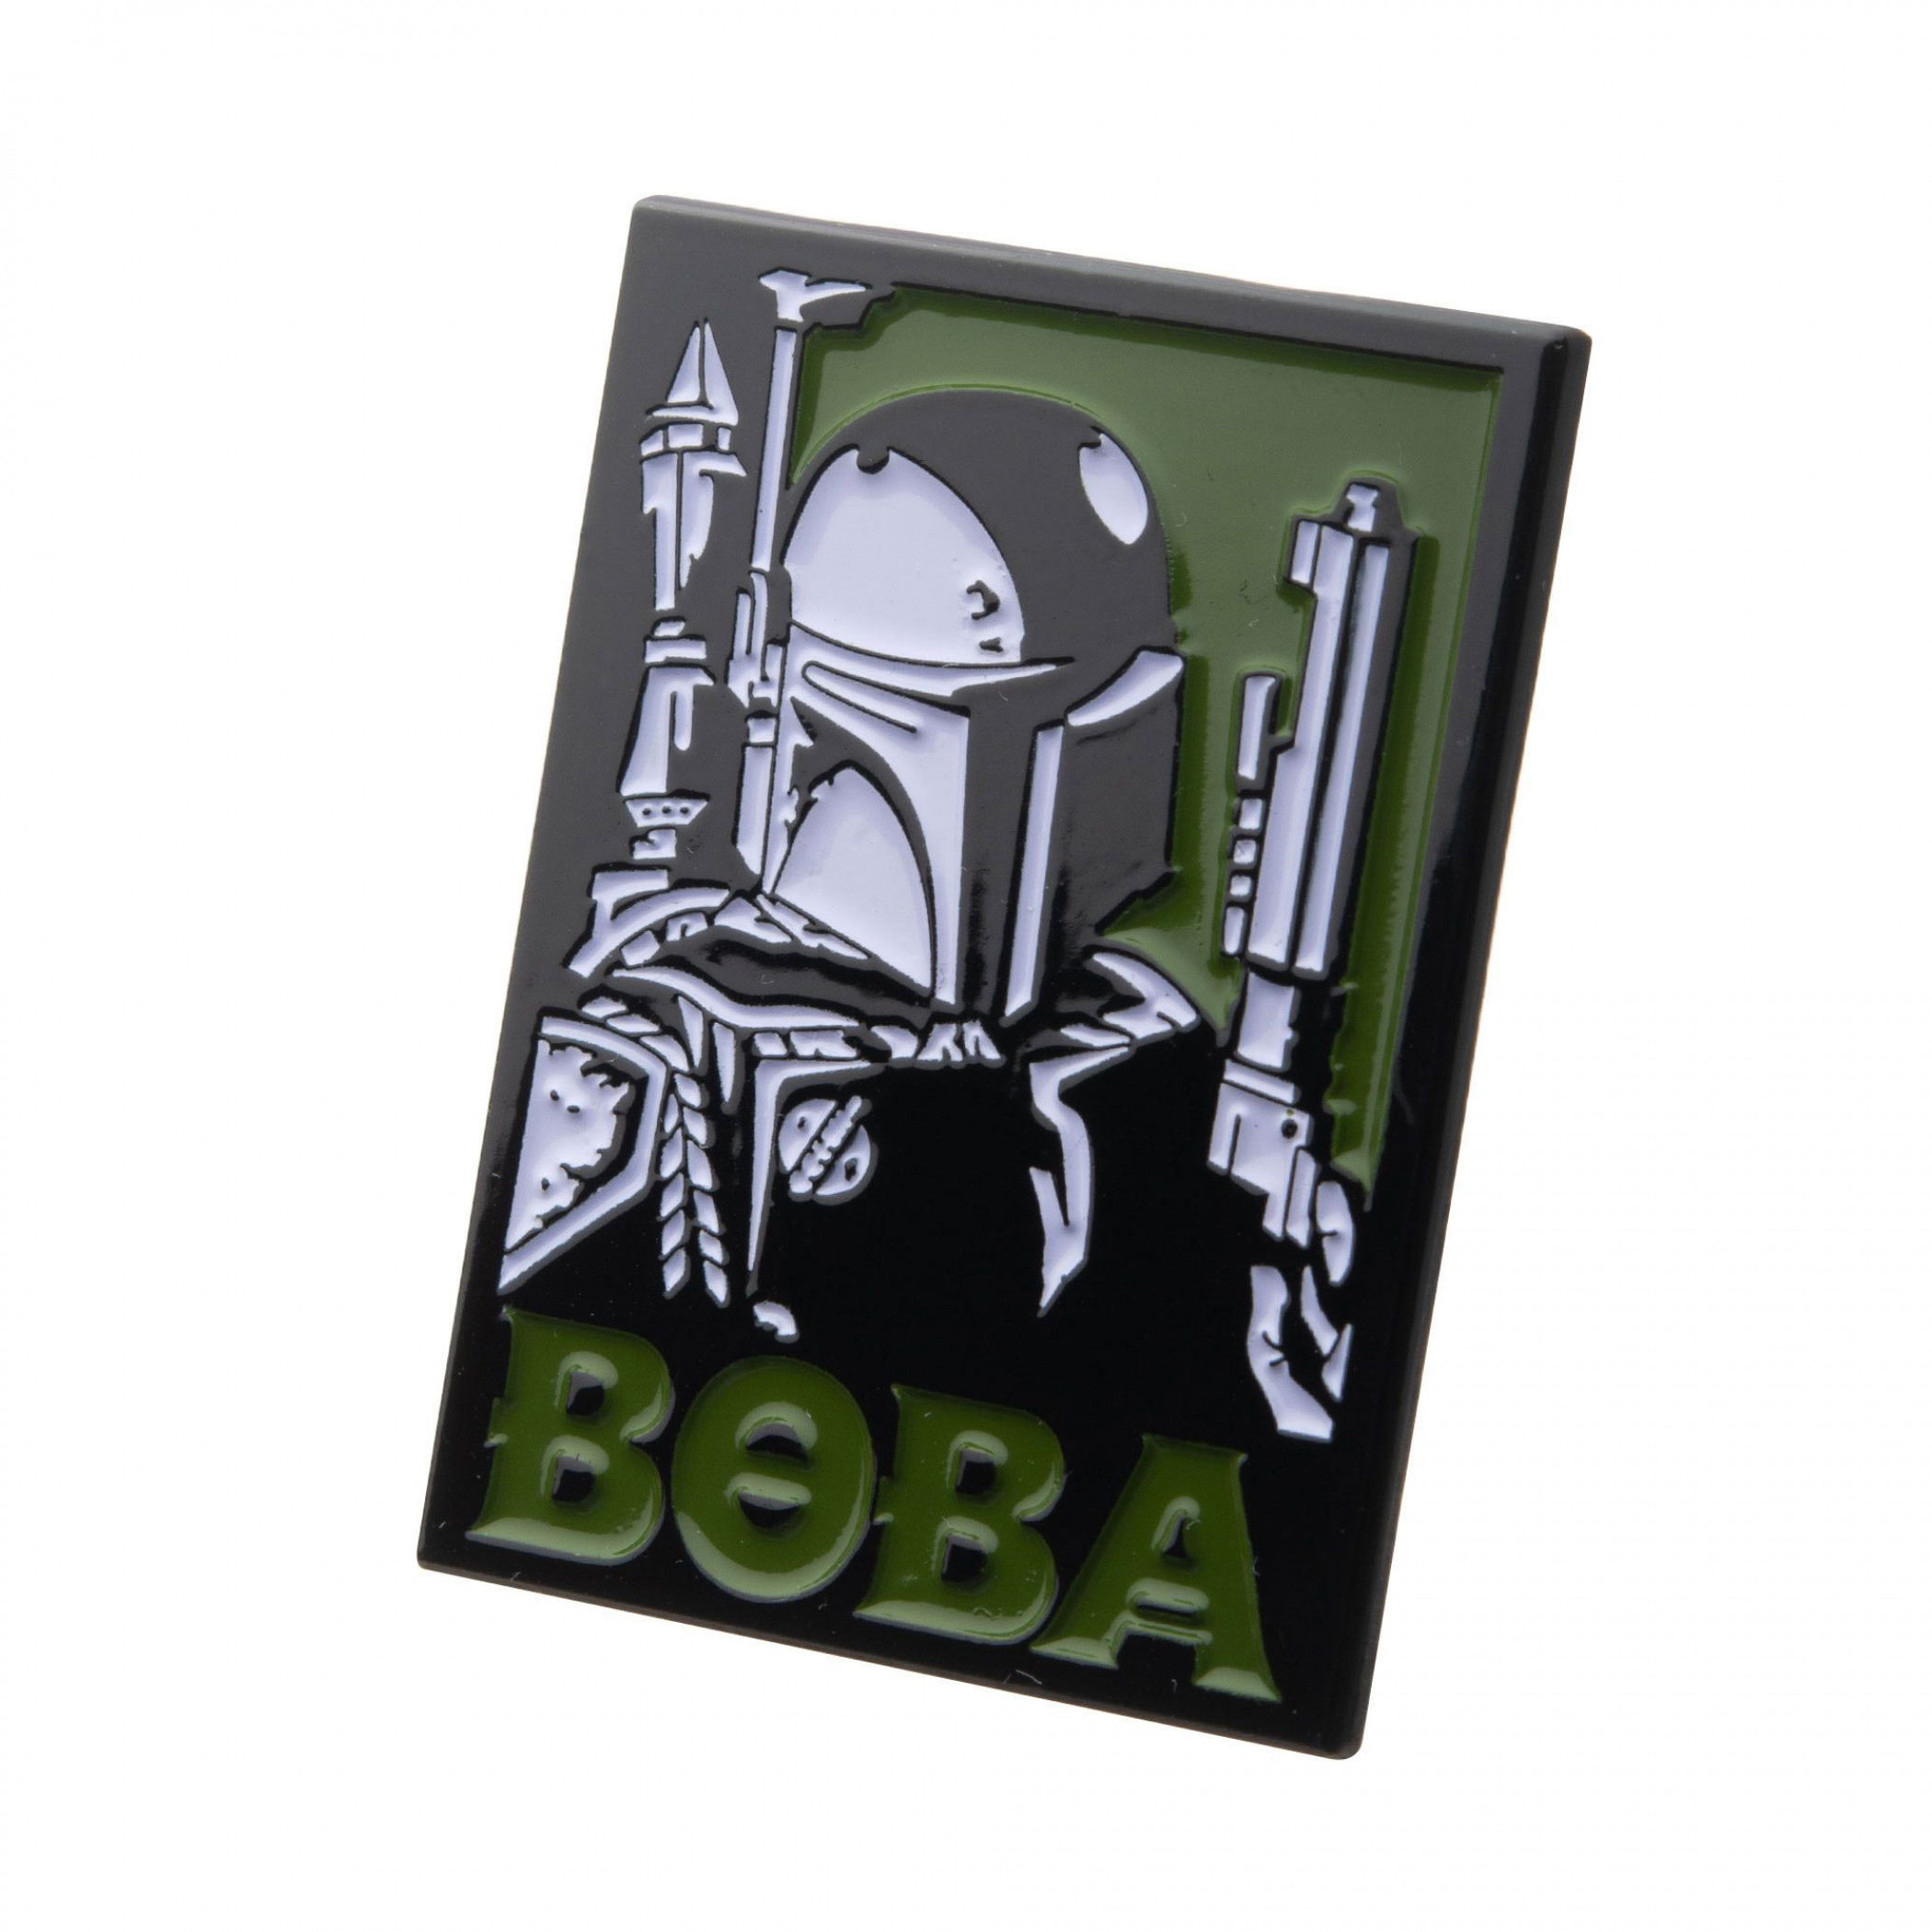 Star Wars Boba Fett Enamel Pin